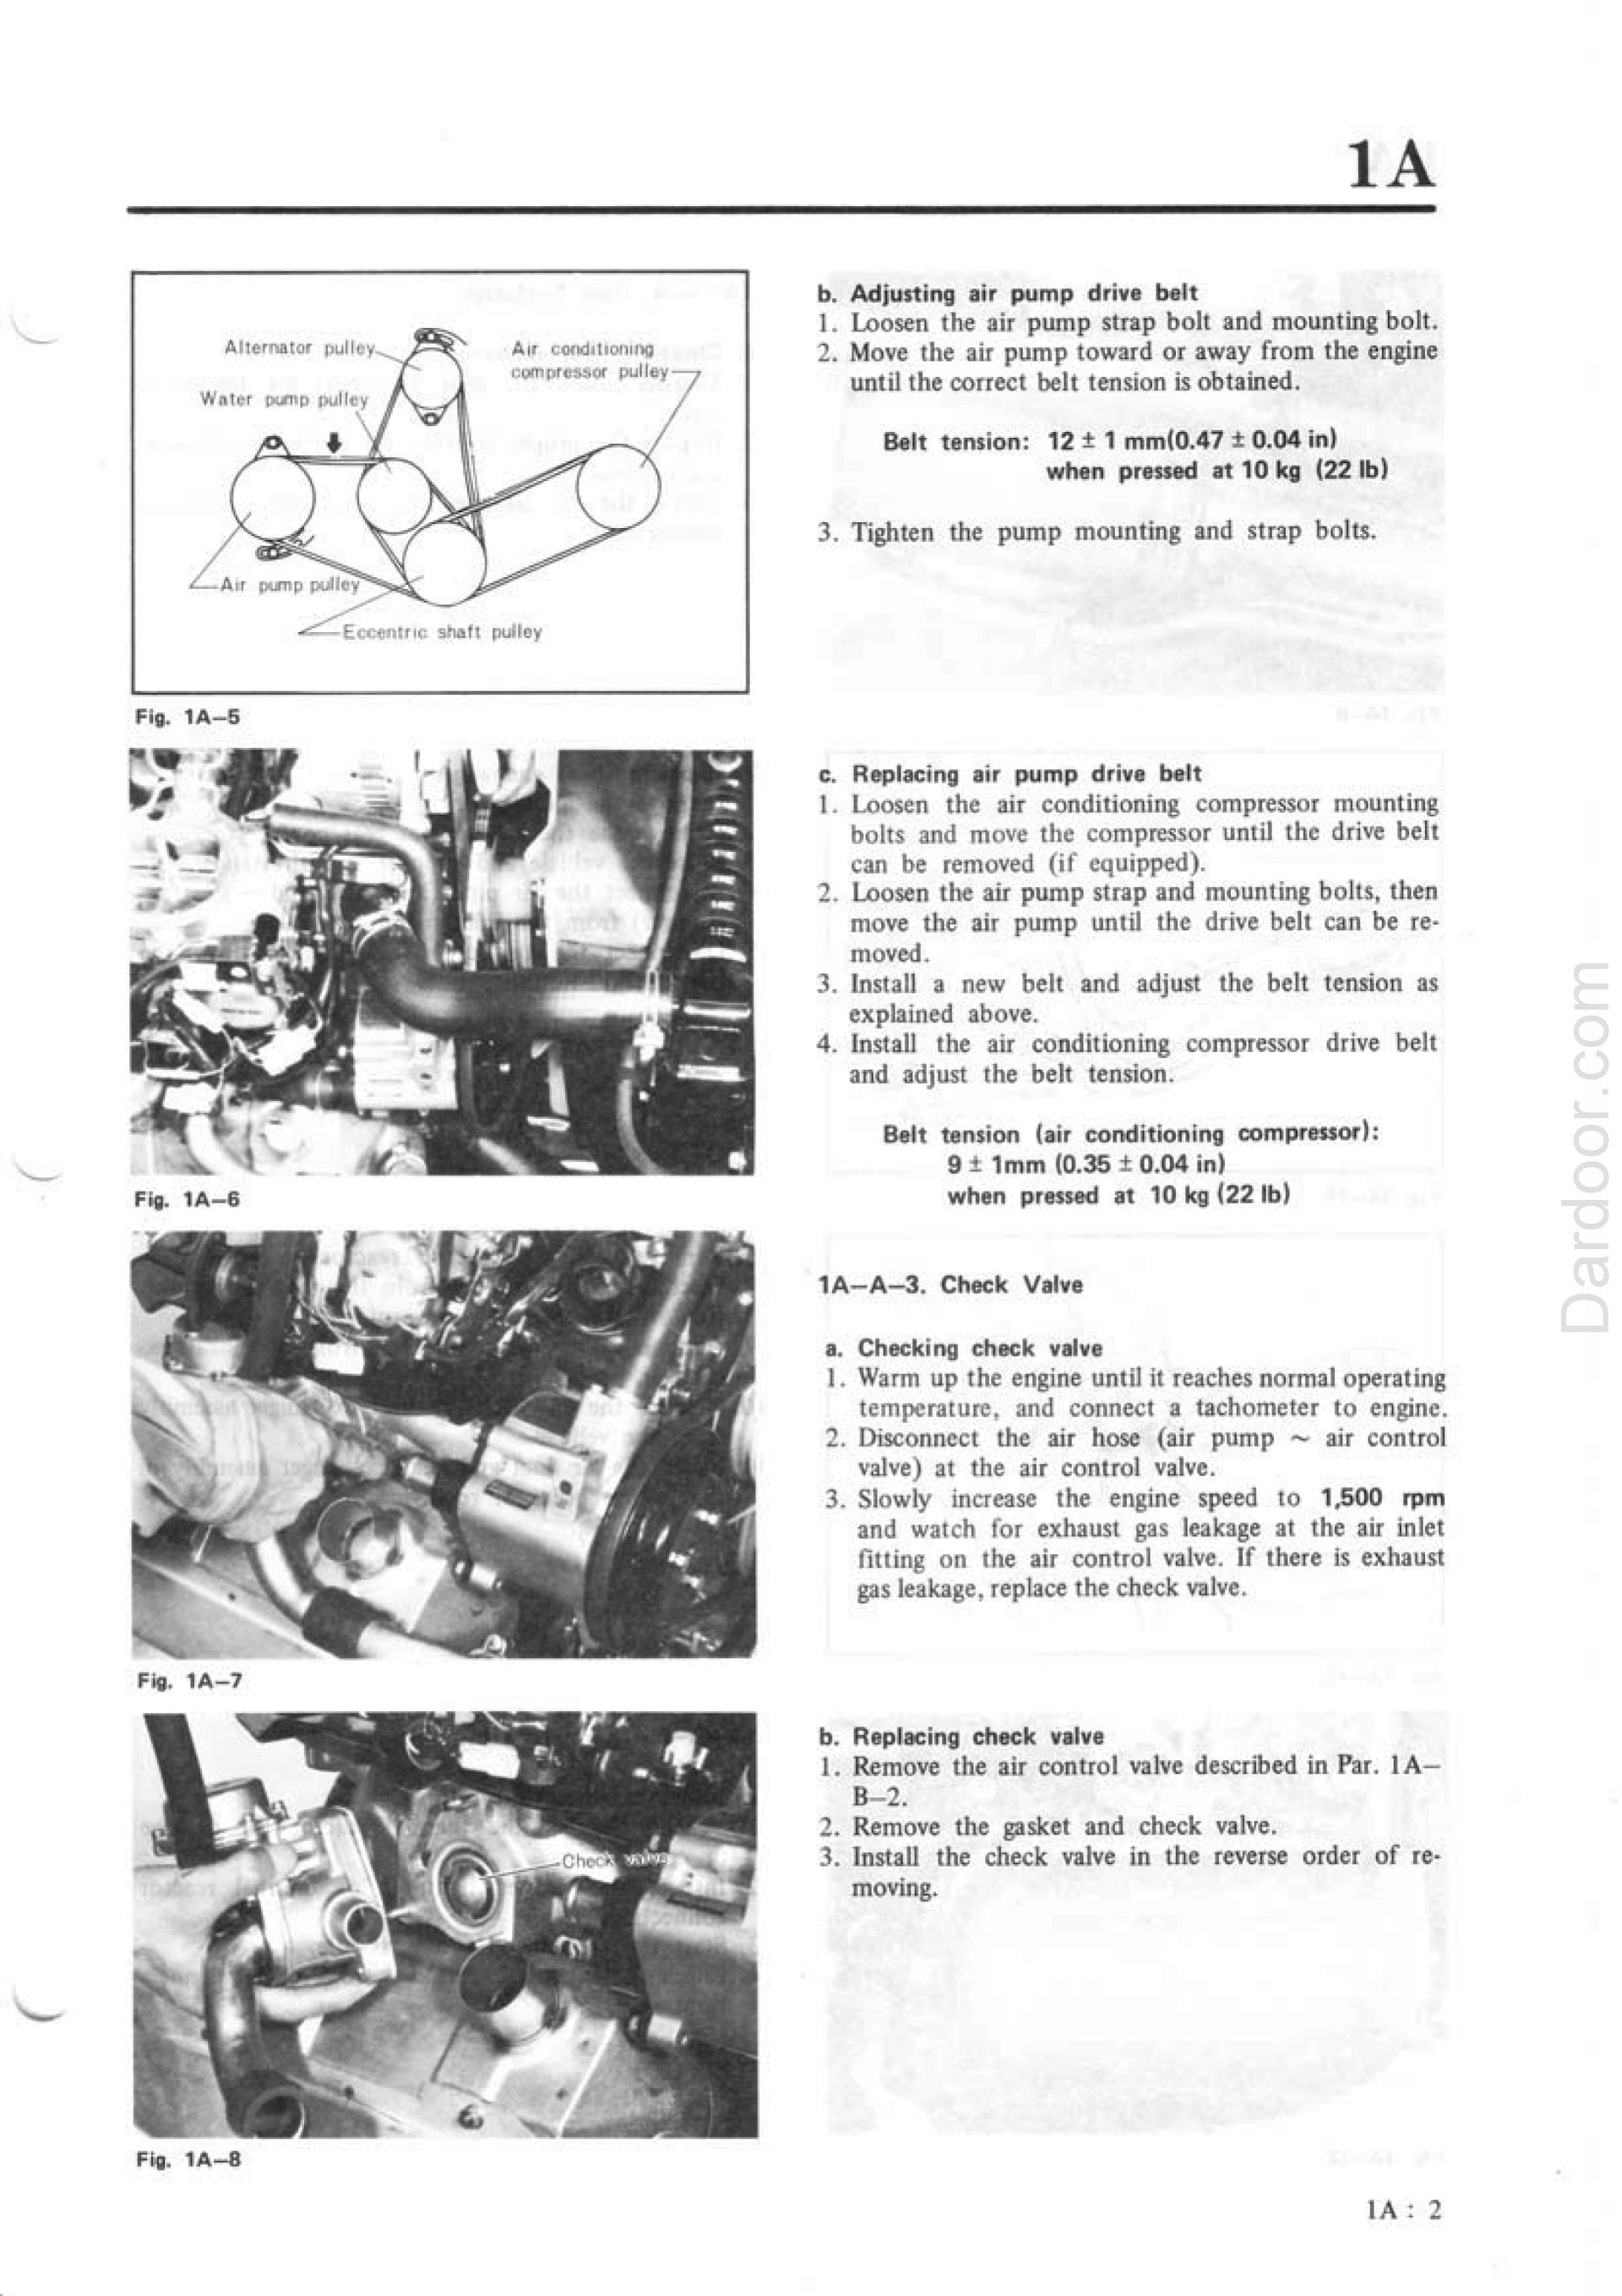 1980 Mazda RX7 repair manual